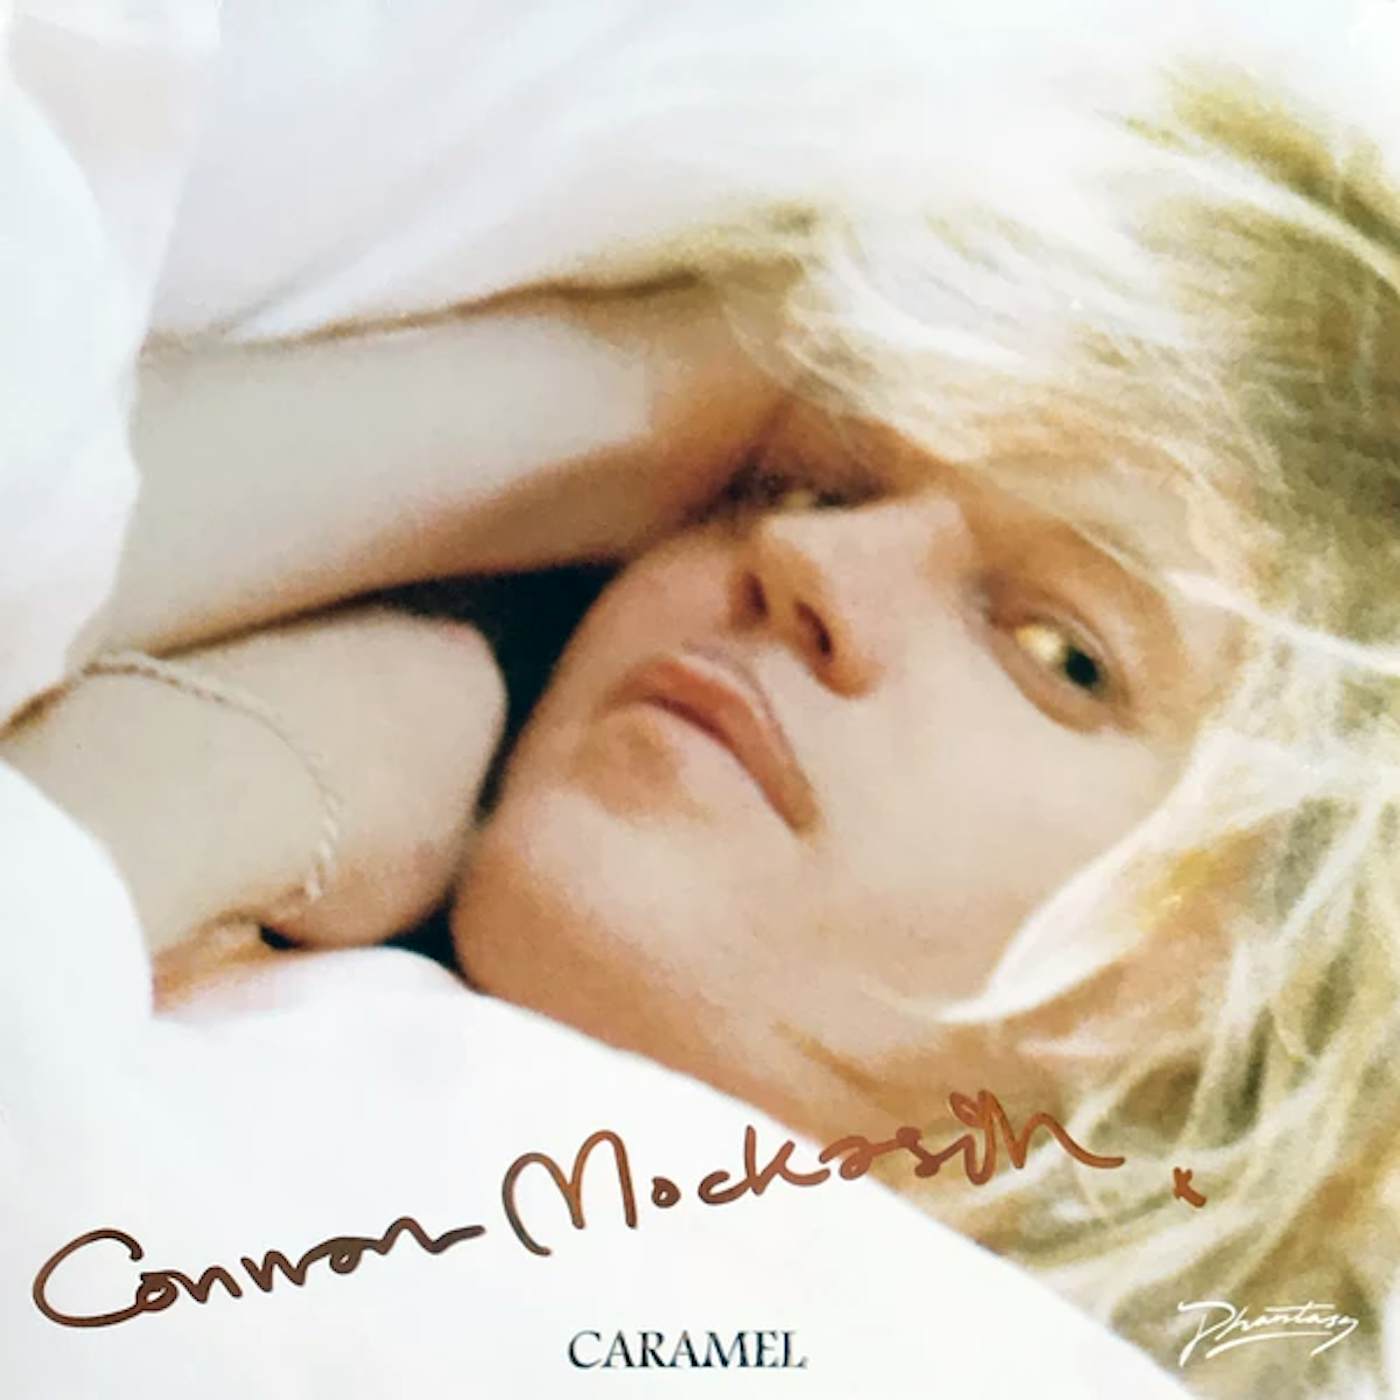 Connan Mockasin Caramel Vinyl Record